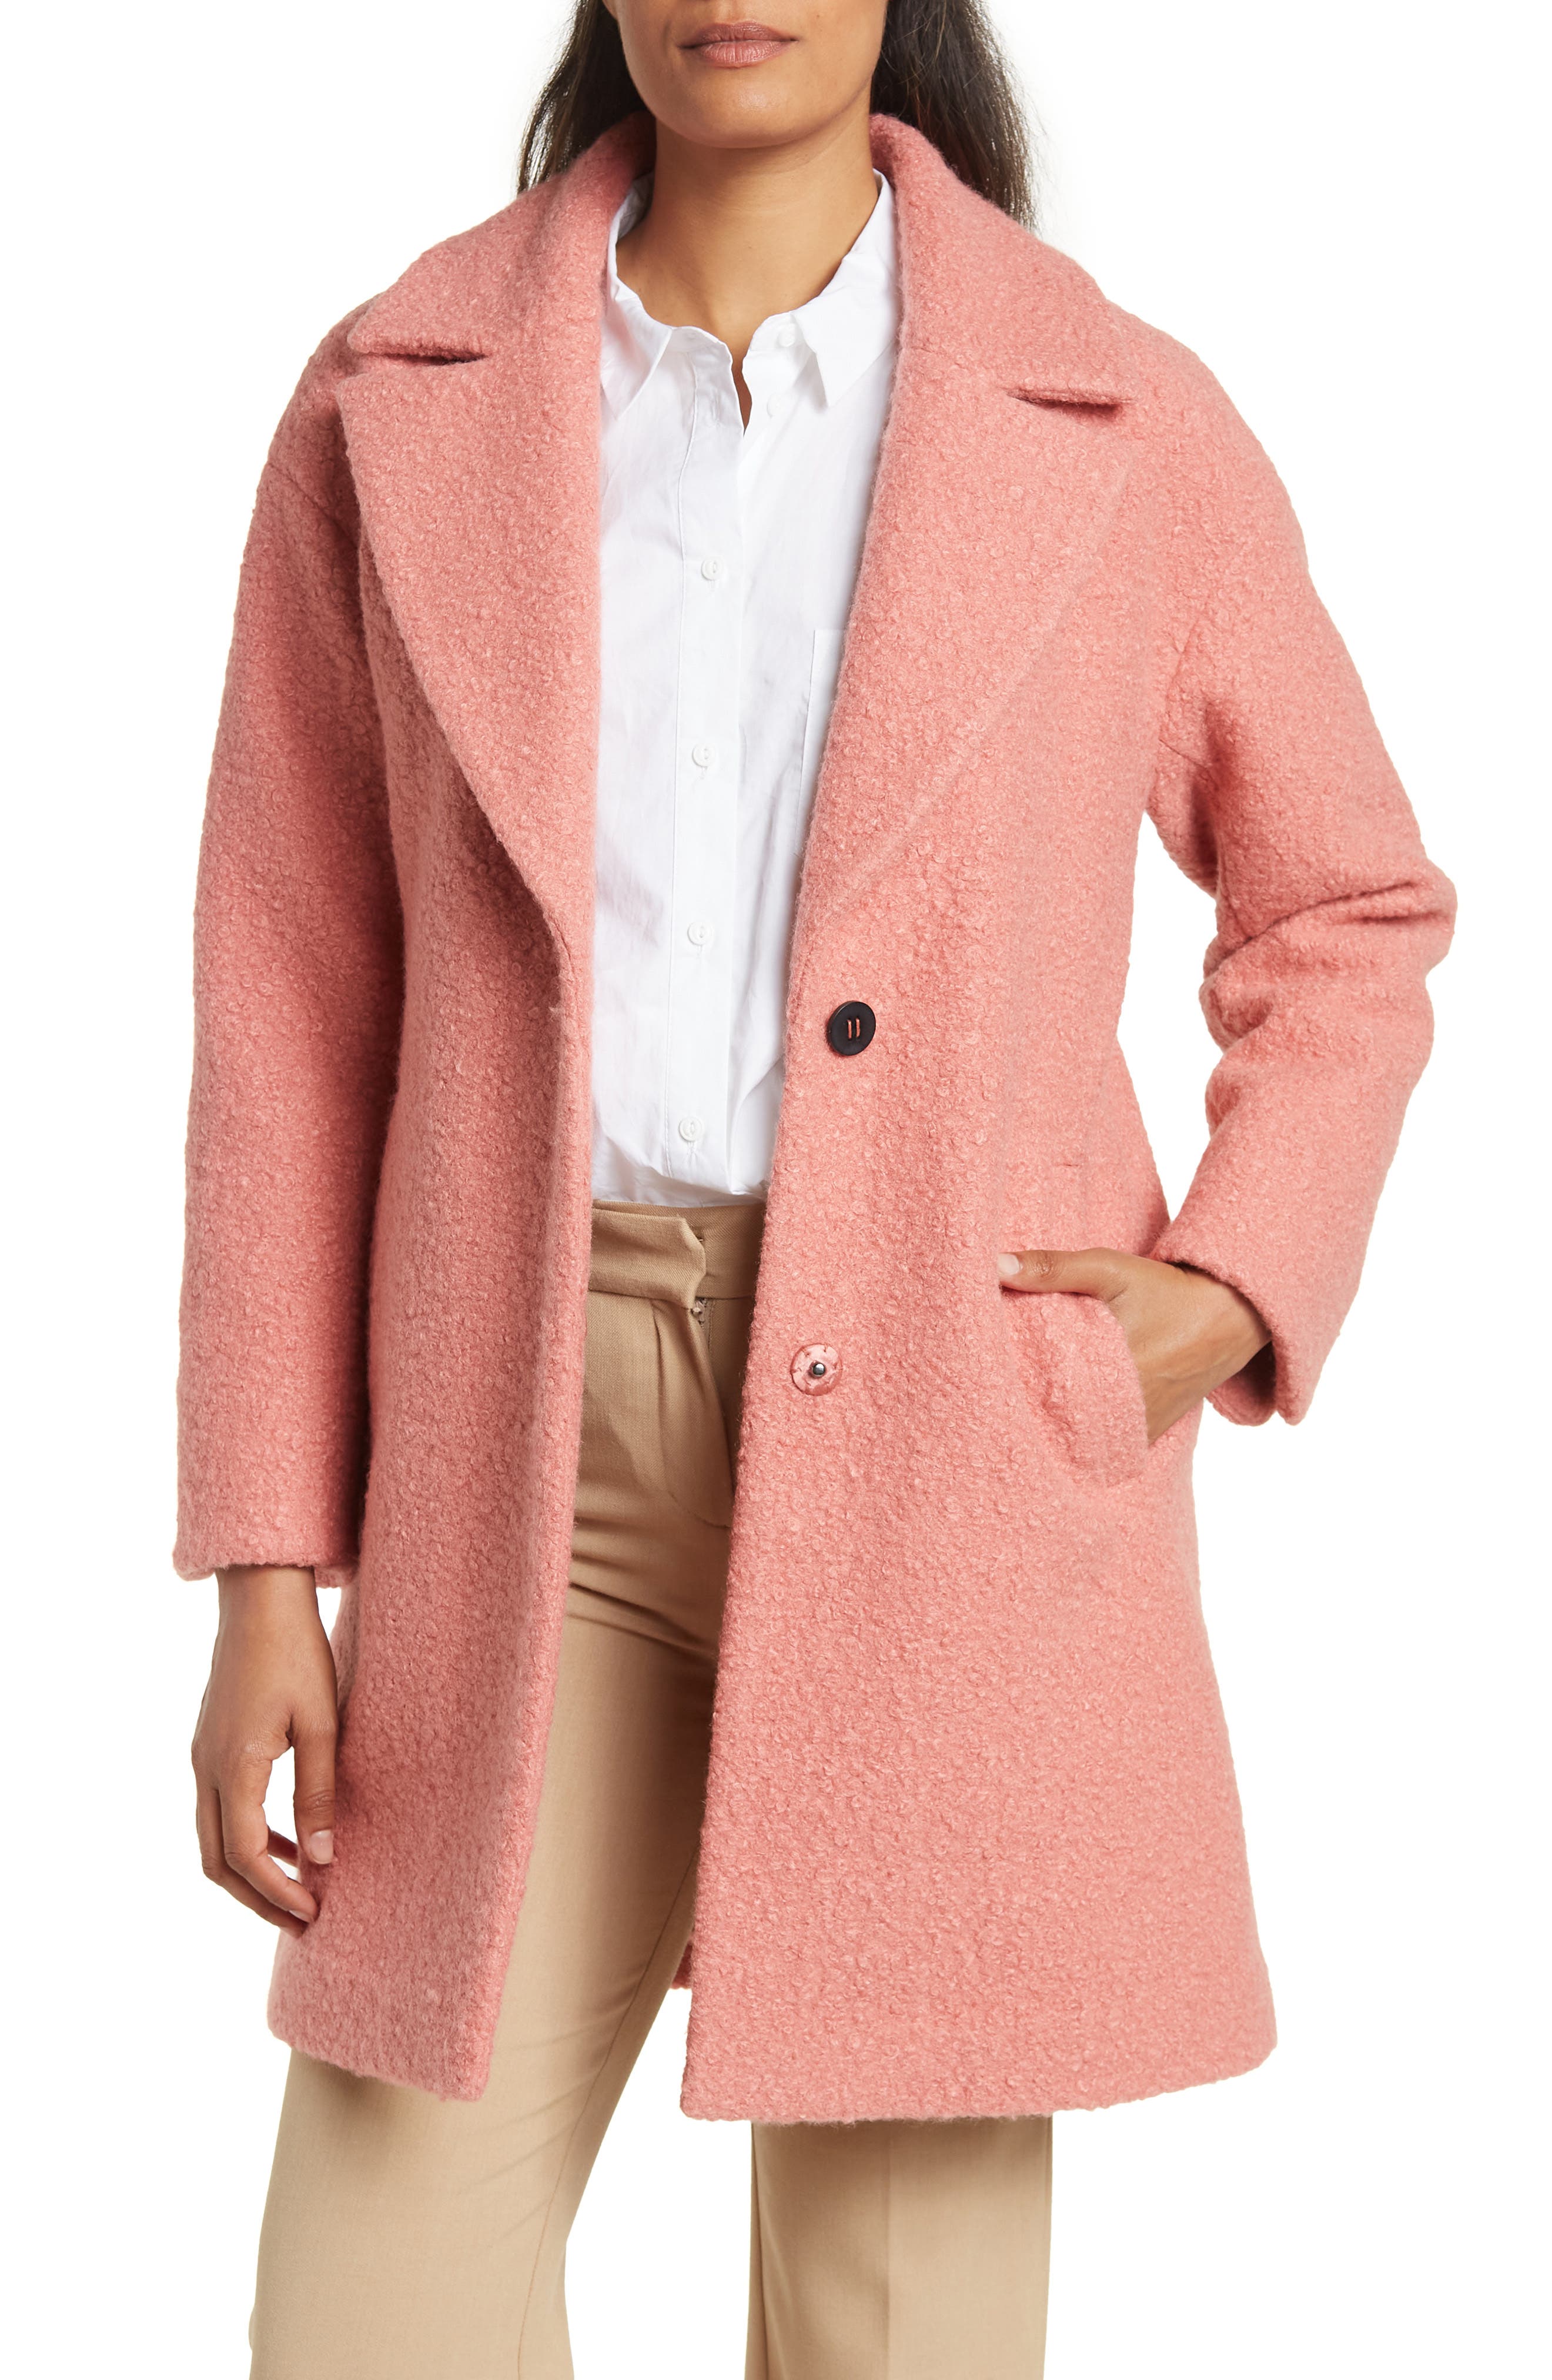 Brown XL discount 67% Paquita Long coat WOMEN FASHION Coats Cloth 